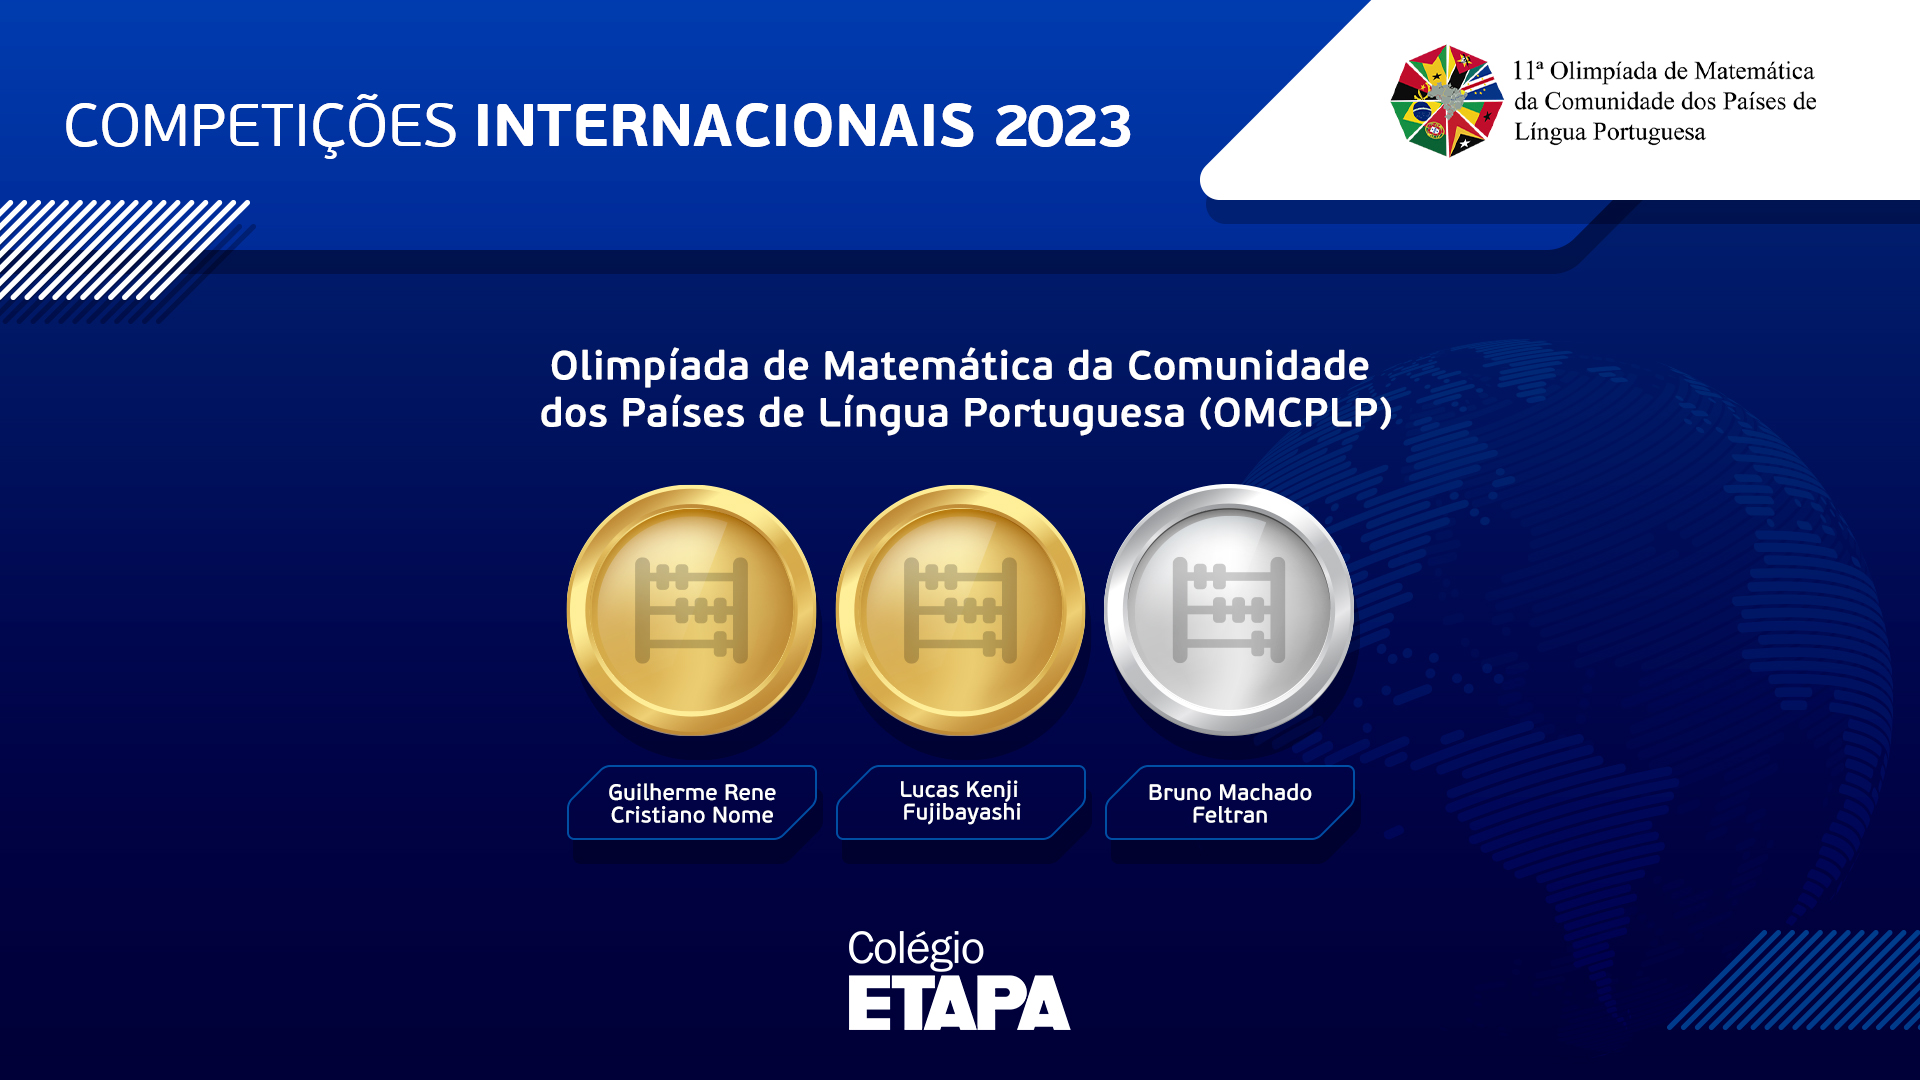 Alunos do Colégio Etapa participam da OMCPLP 2023 e conquistam medalhas para o Brasil.